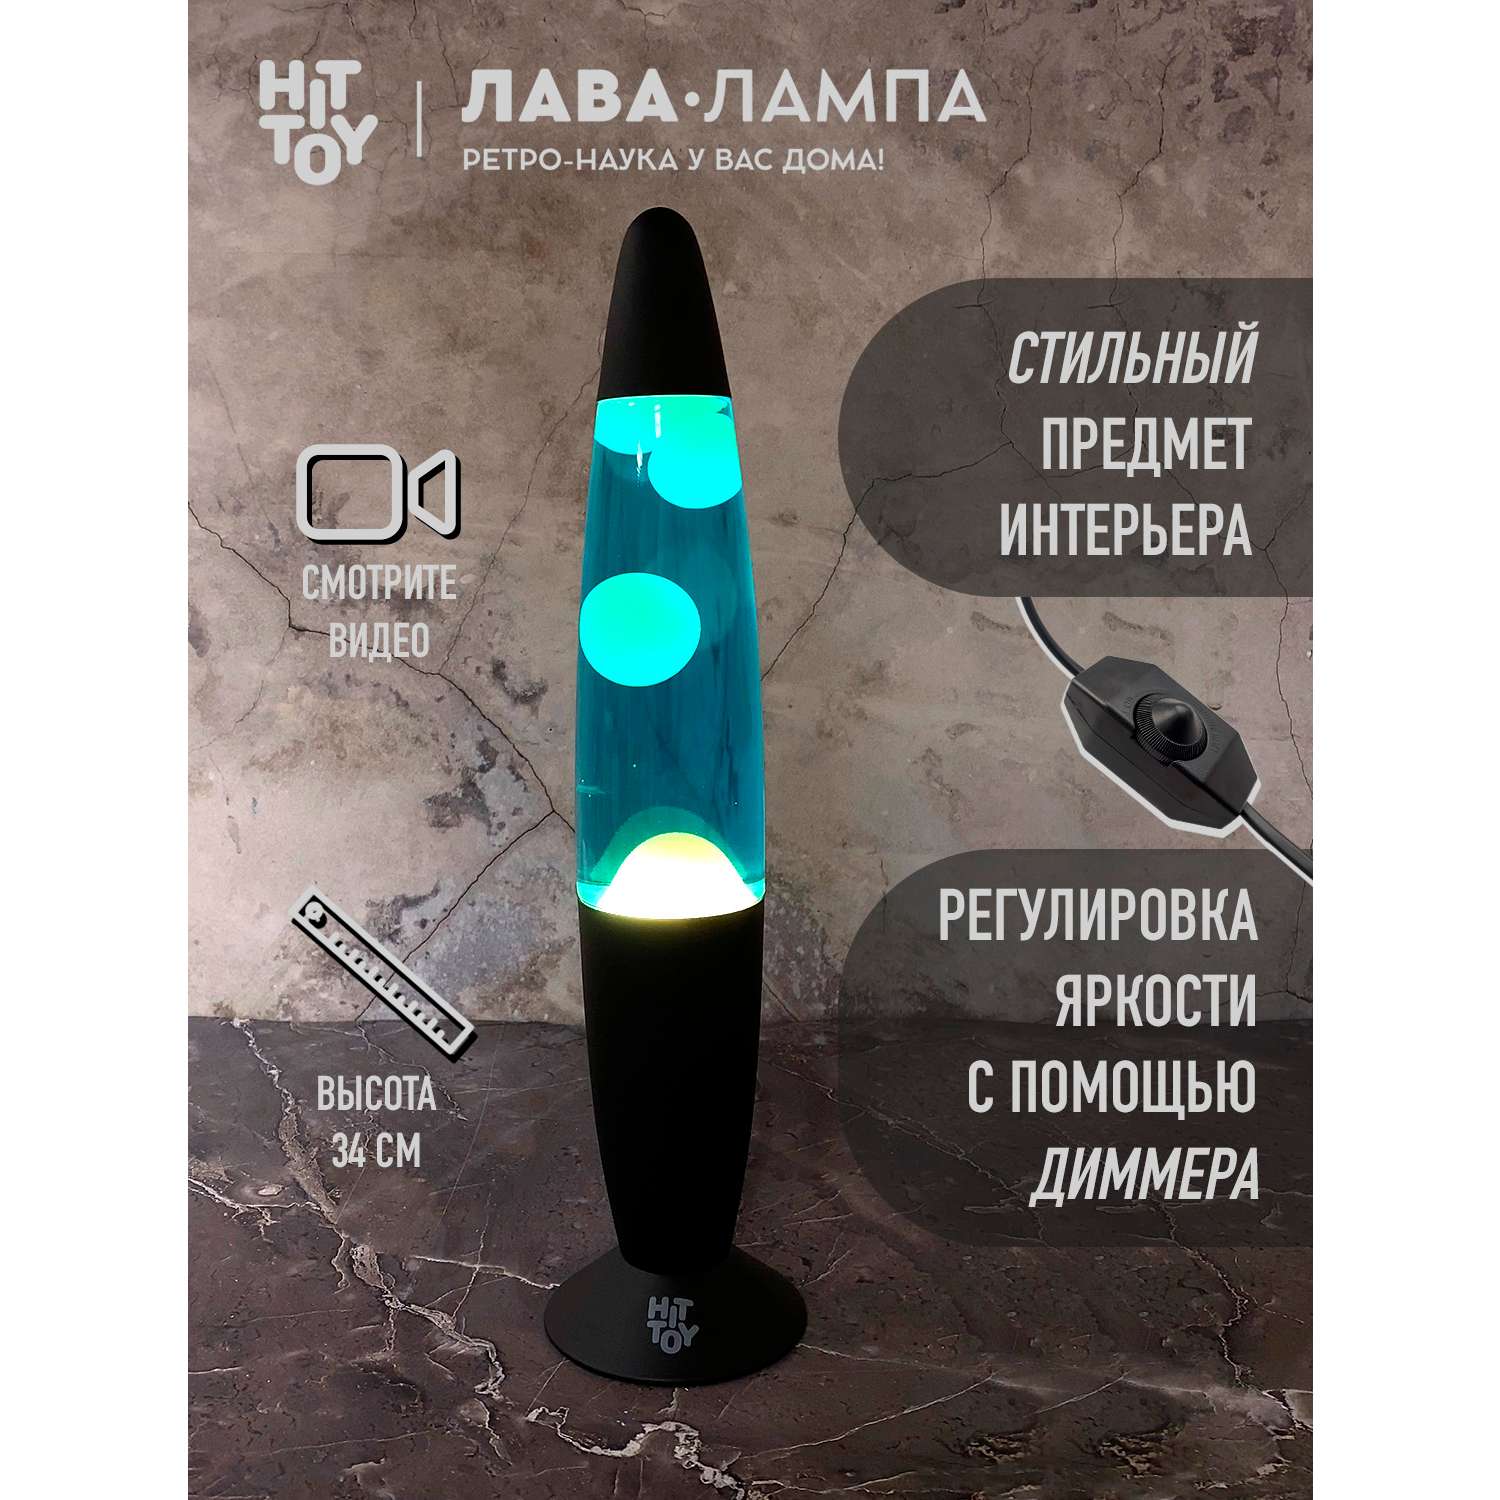 Светильник HitToy Лава-лампа черный корпус 34 см Синий/Белый - фото 4